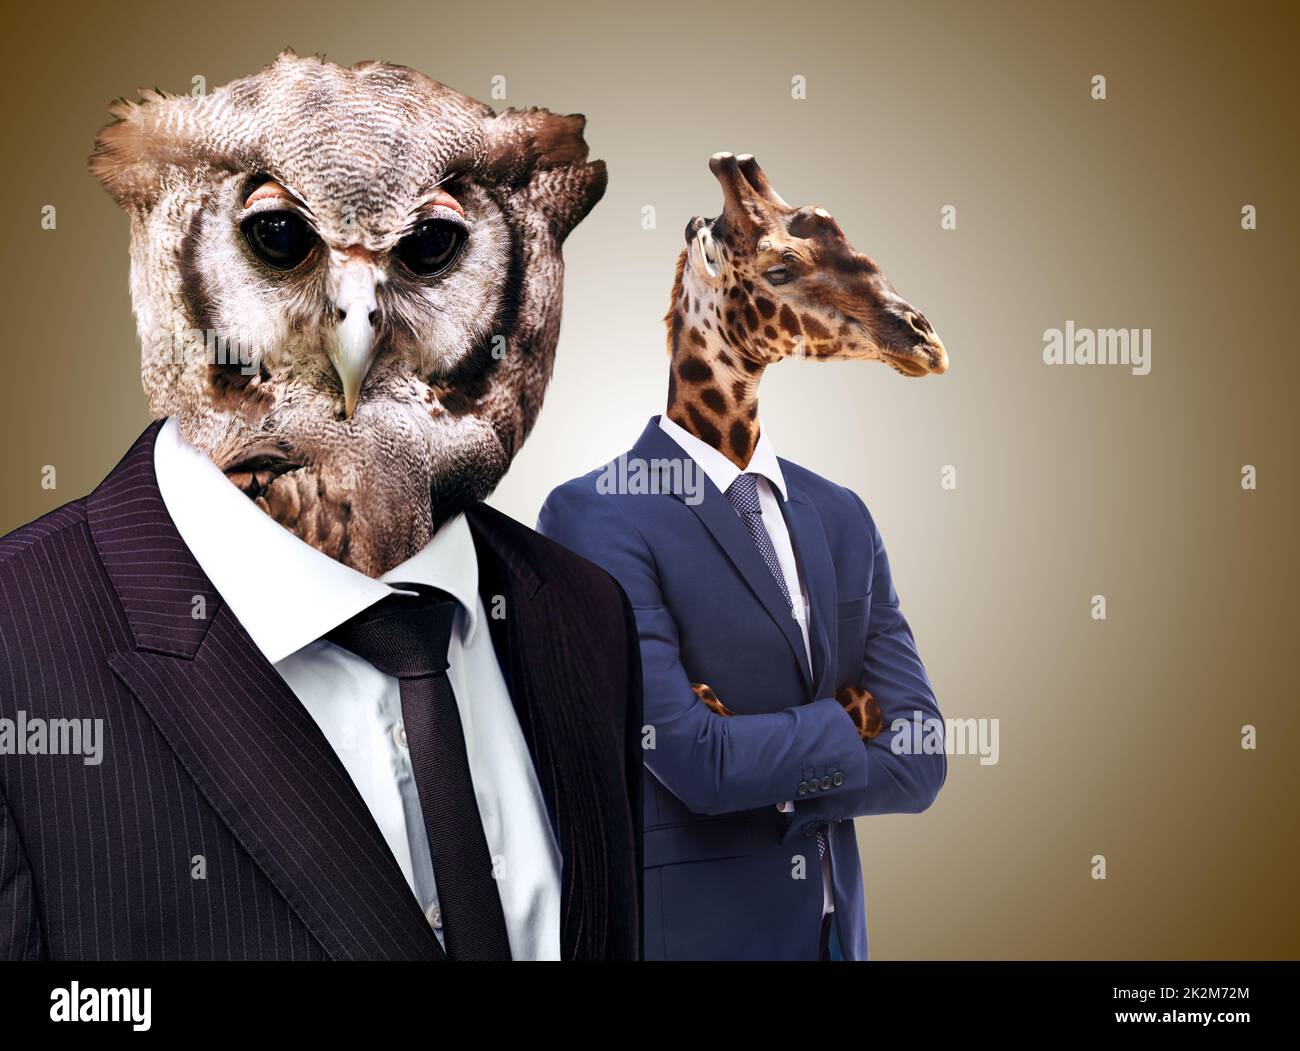 Bienvenue dans la jungle d'entreprise. Image conceptuelle des têtes d'animaux sur les hommes d'affaires. Banque D'Images